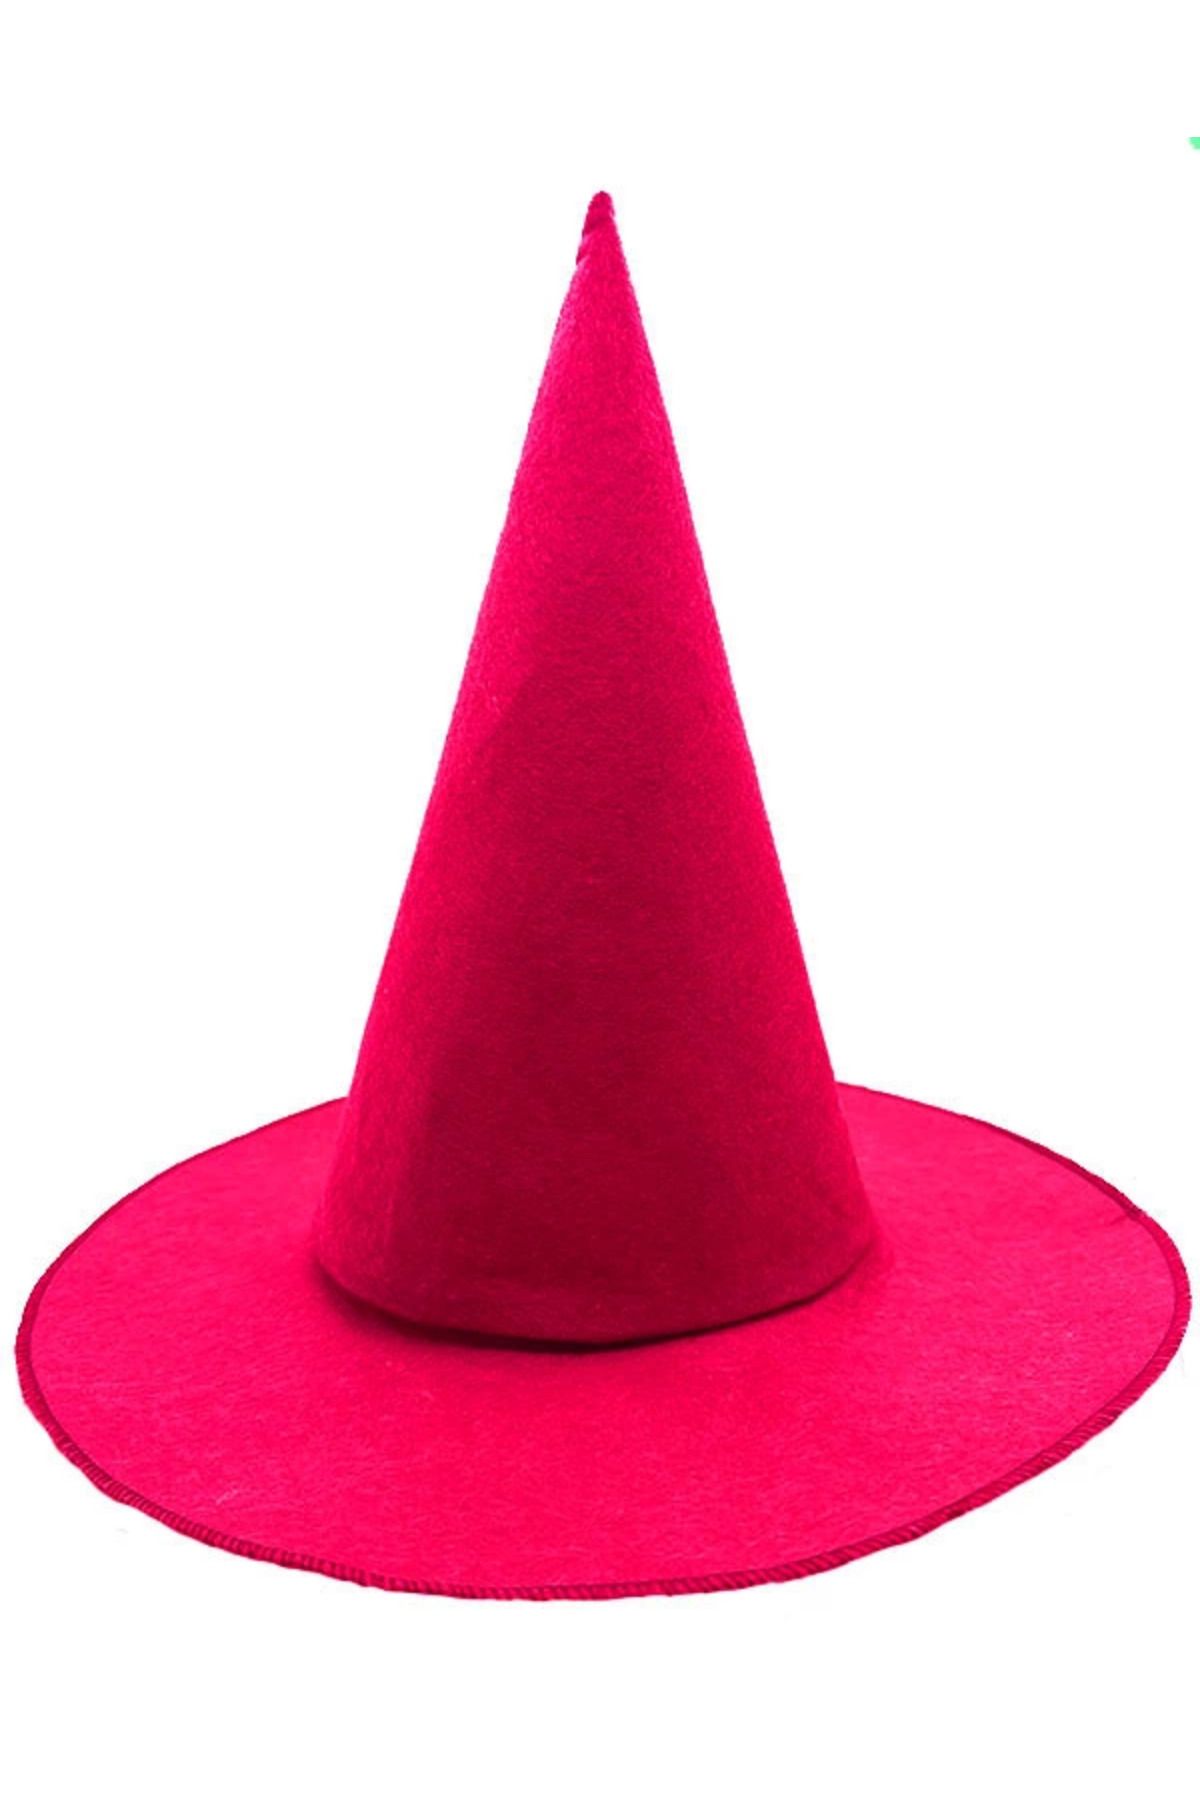 Wisdom Rain Pembe Fuşya Renk Keçe Cadı Şapkası Yetişkin Çocuk Uyumlu 35x38 Cm